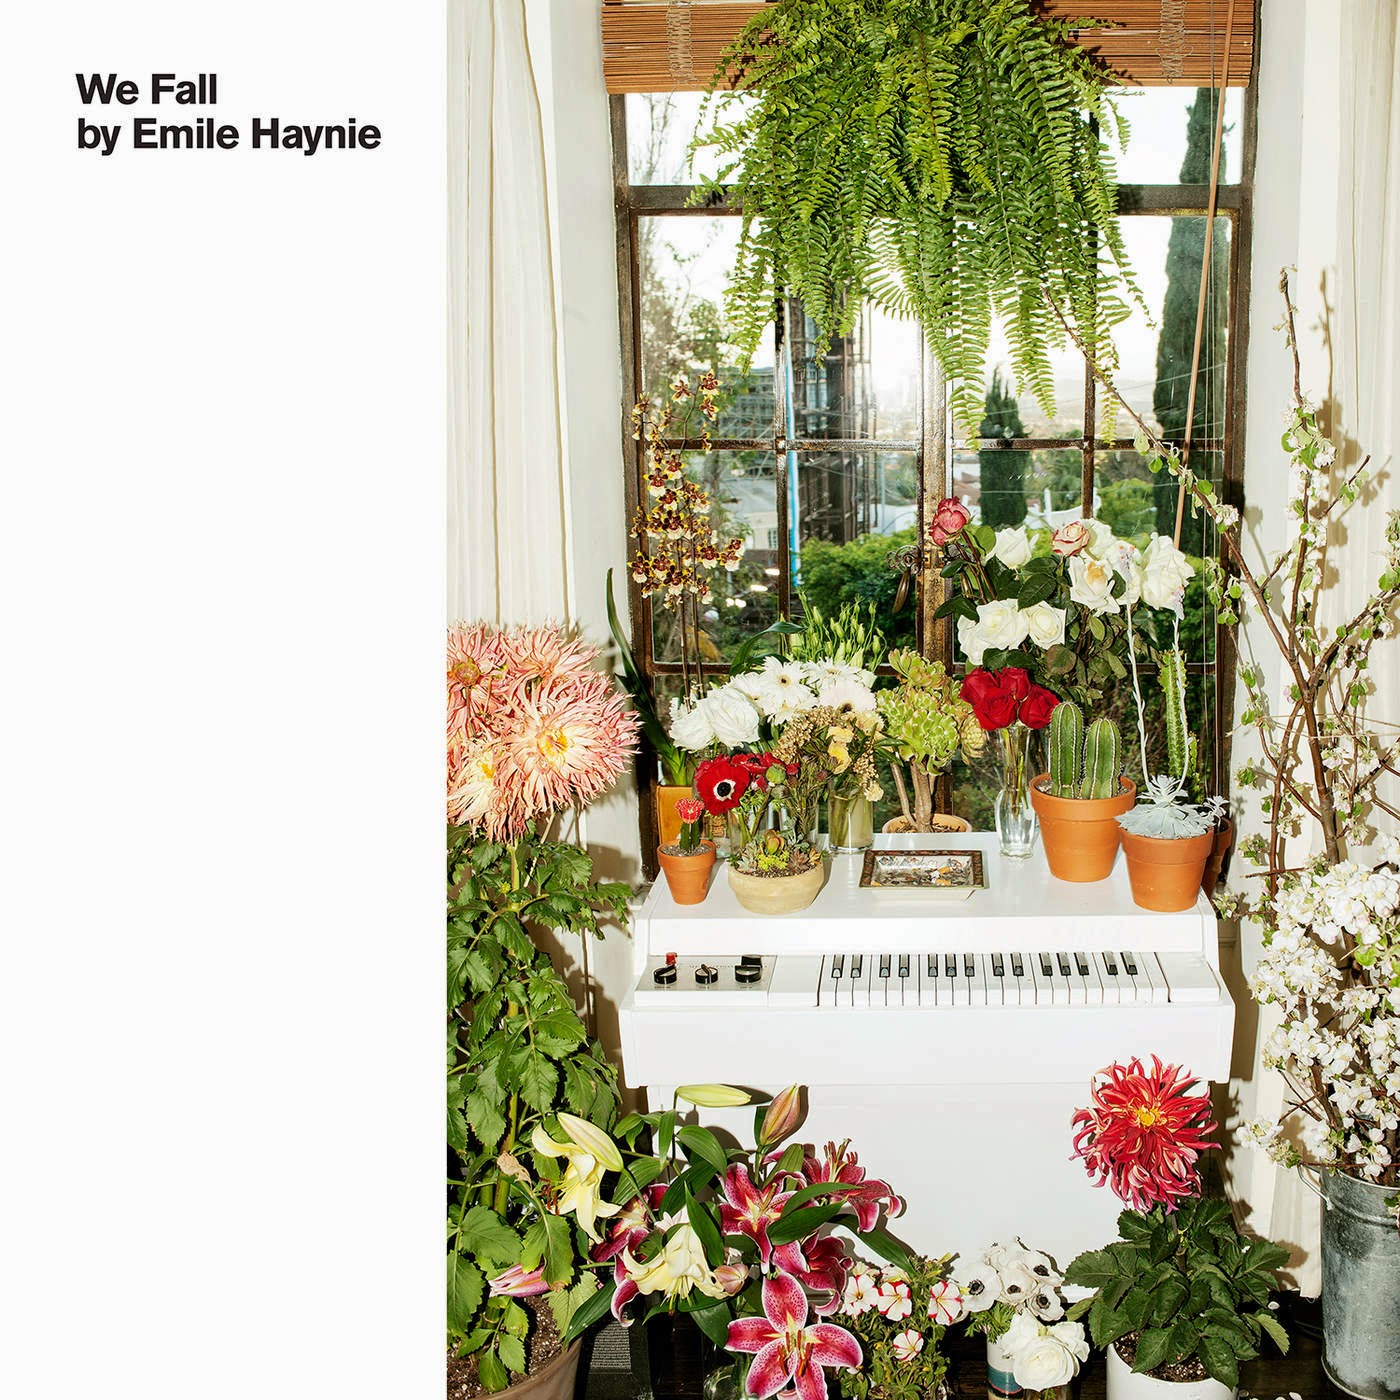 Premier album d'Emile Haynie le 23 février 2015, "We Fall".